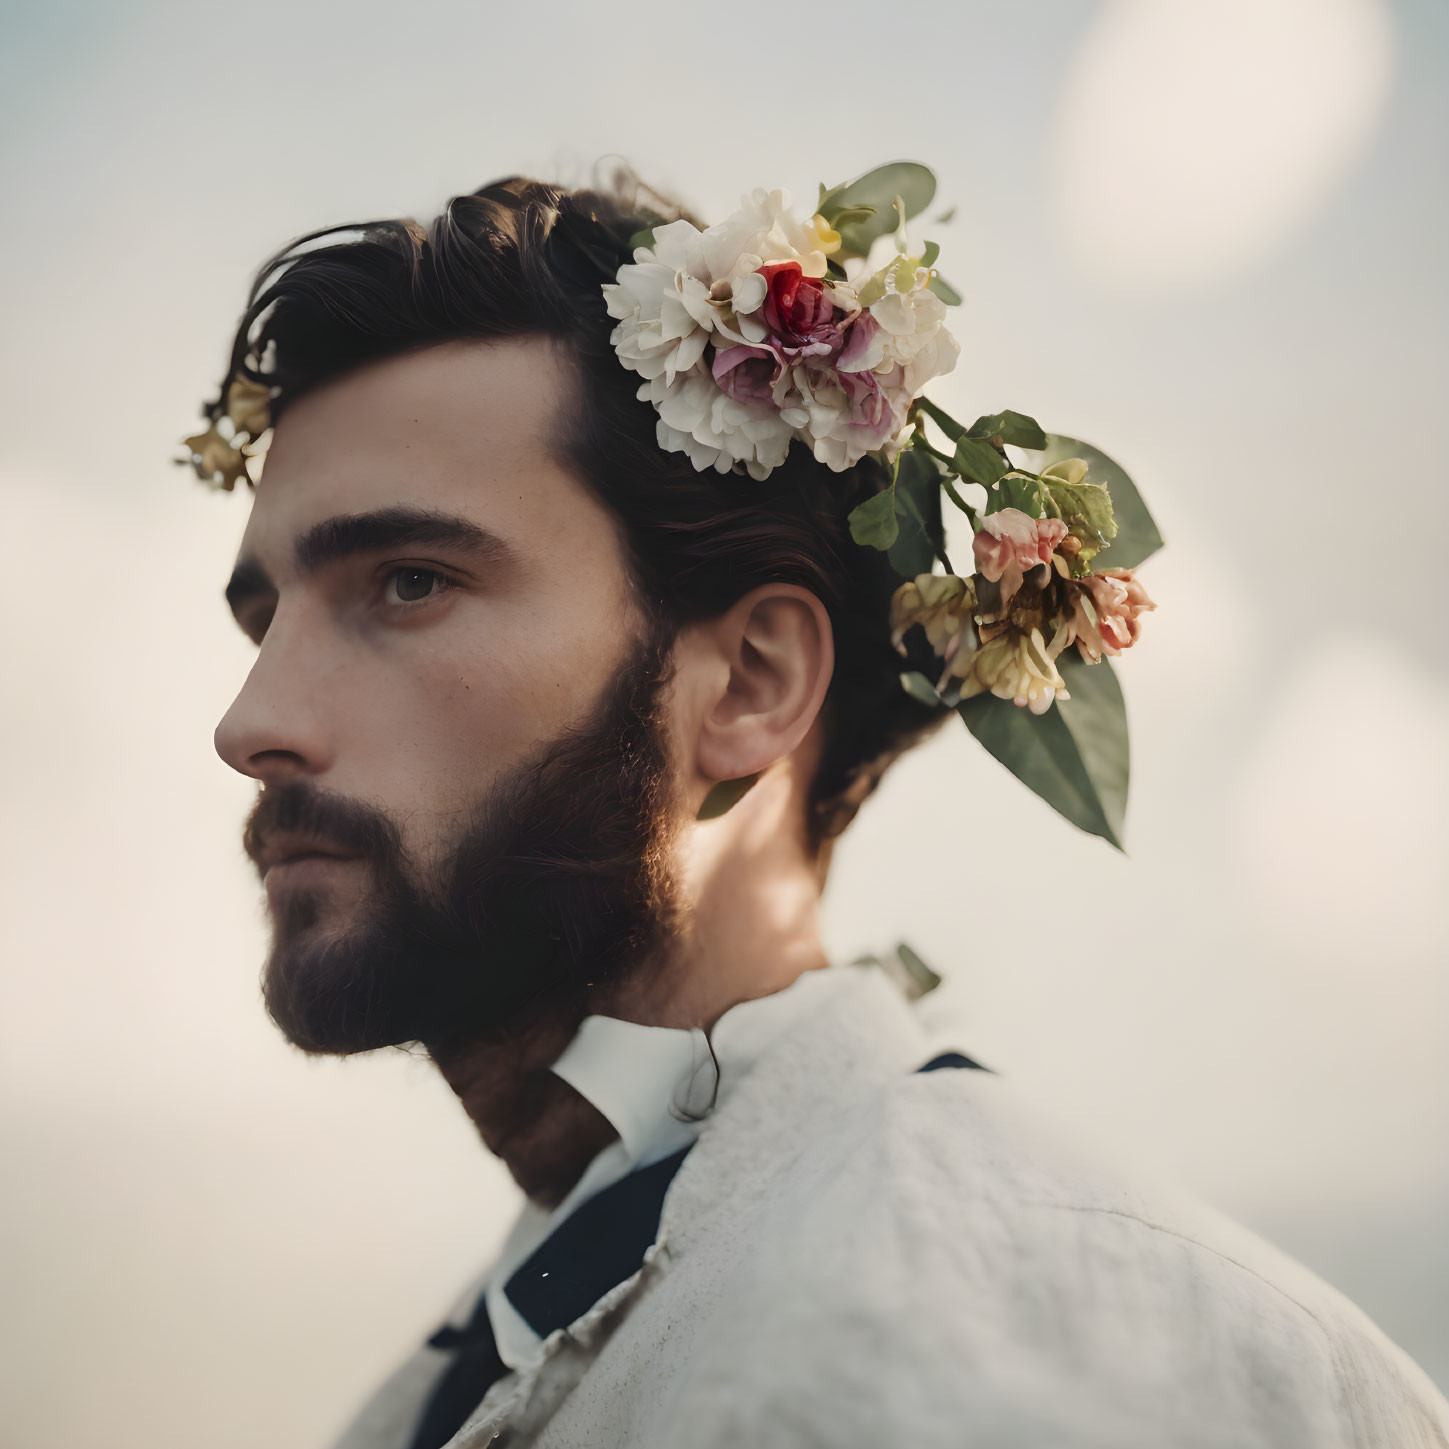 Beard and flowers 